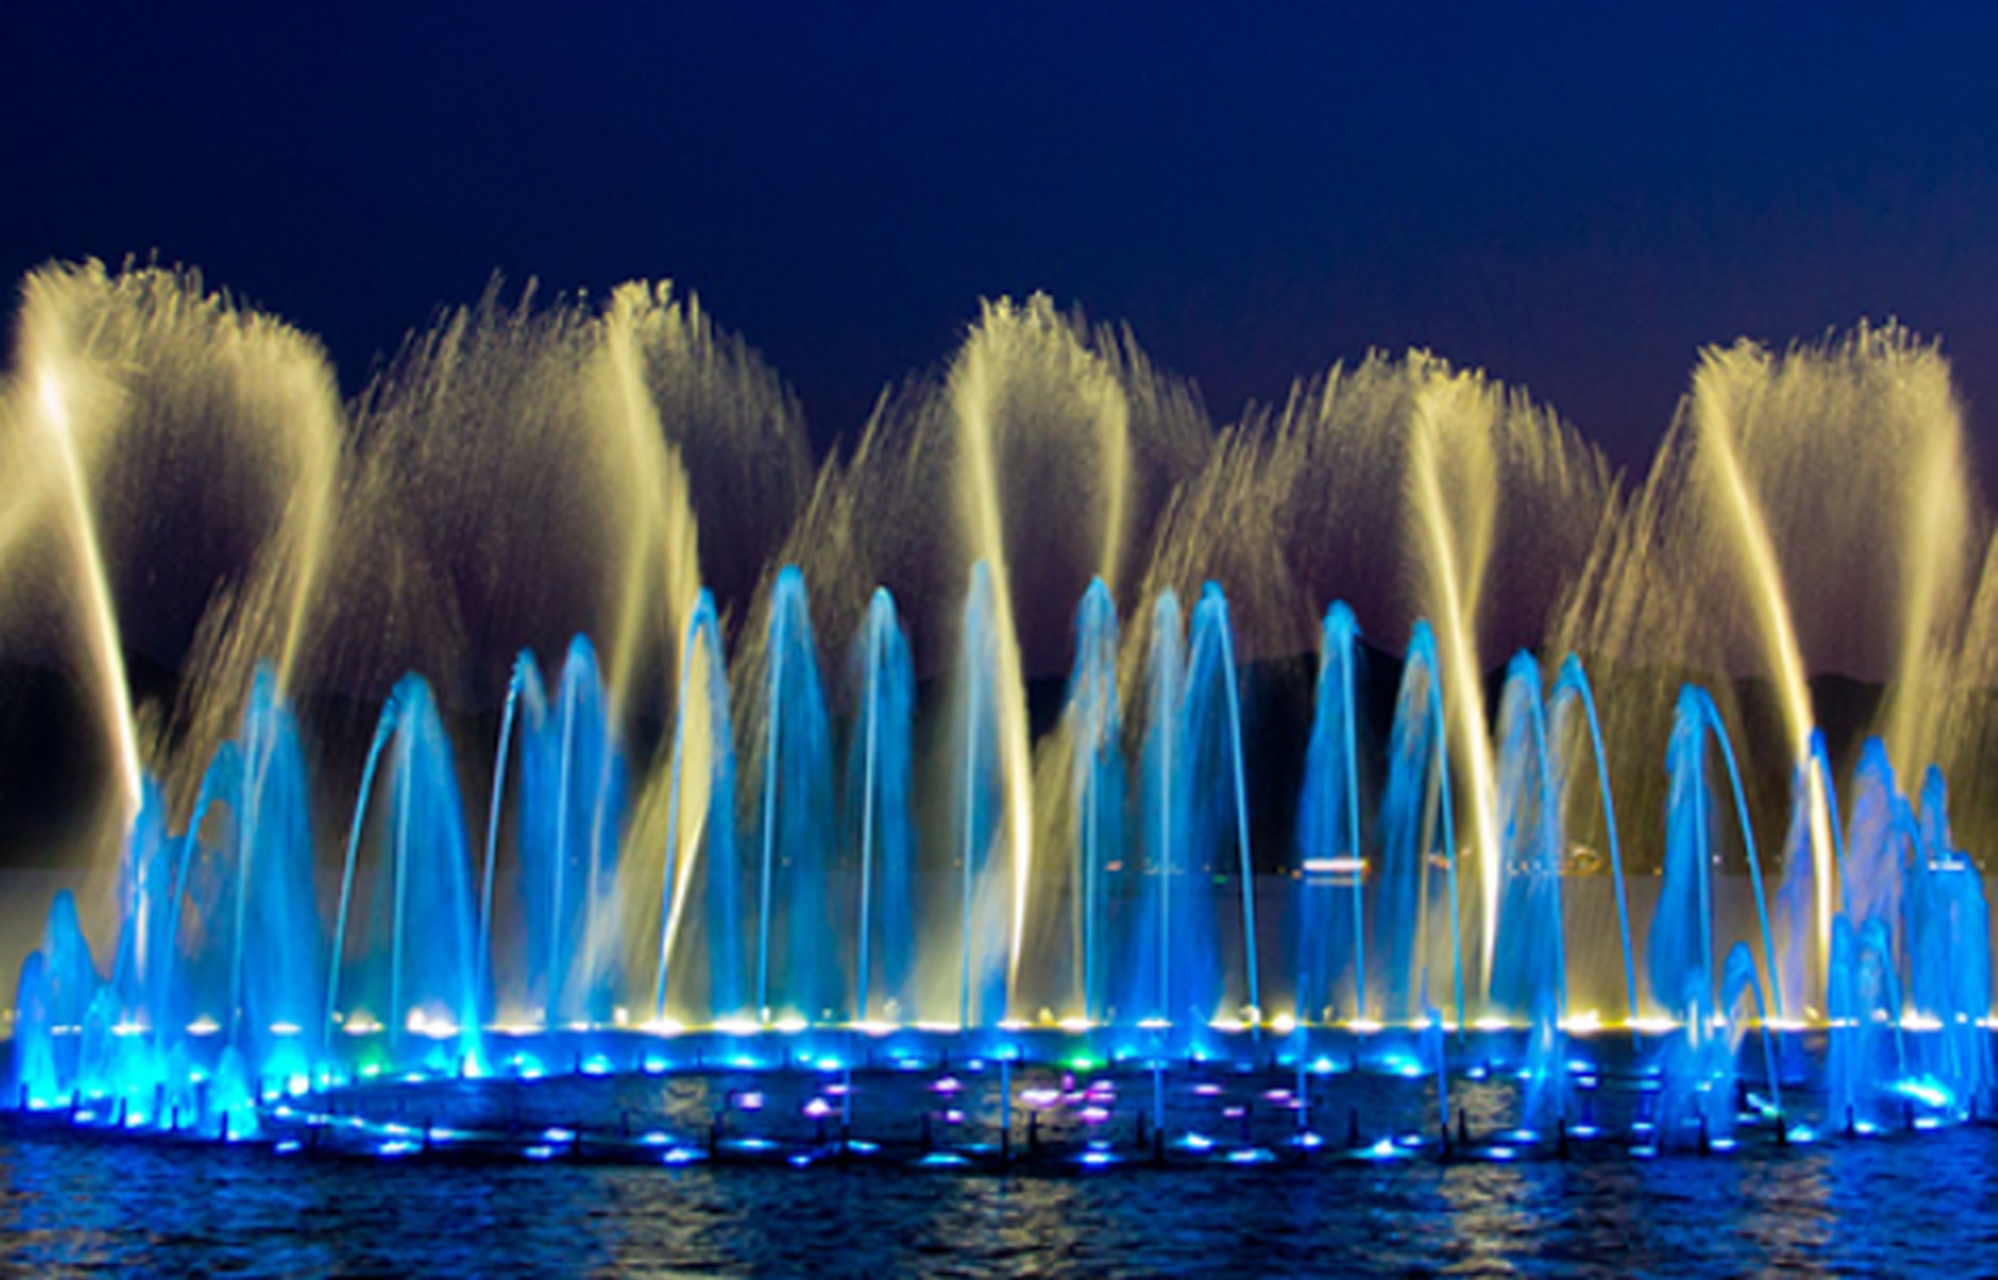 即日起至五一结束,双鹤湖中央公园 鹤之灵大型音乐喷泉与您不见不散